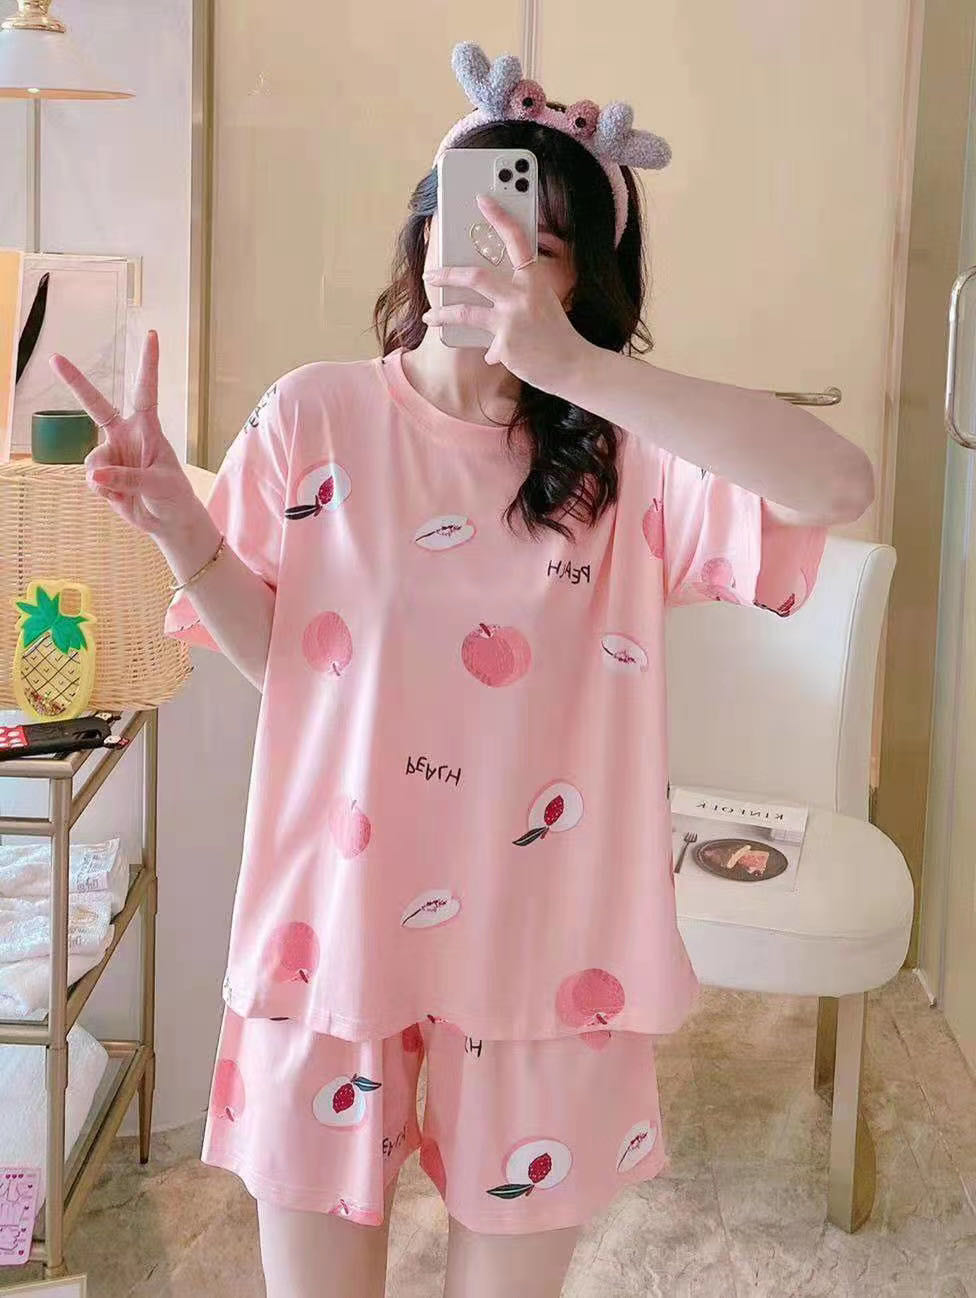 2021 ชุดนอนการ์ตูนน่ารักเกาหลีของผู้หญิงฤดูร้อนสั้นหลวมนักเรียนใหม่แขนสั้นชุดนอน / ใส่อยู่บ้านHome service pajamas set